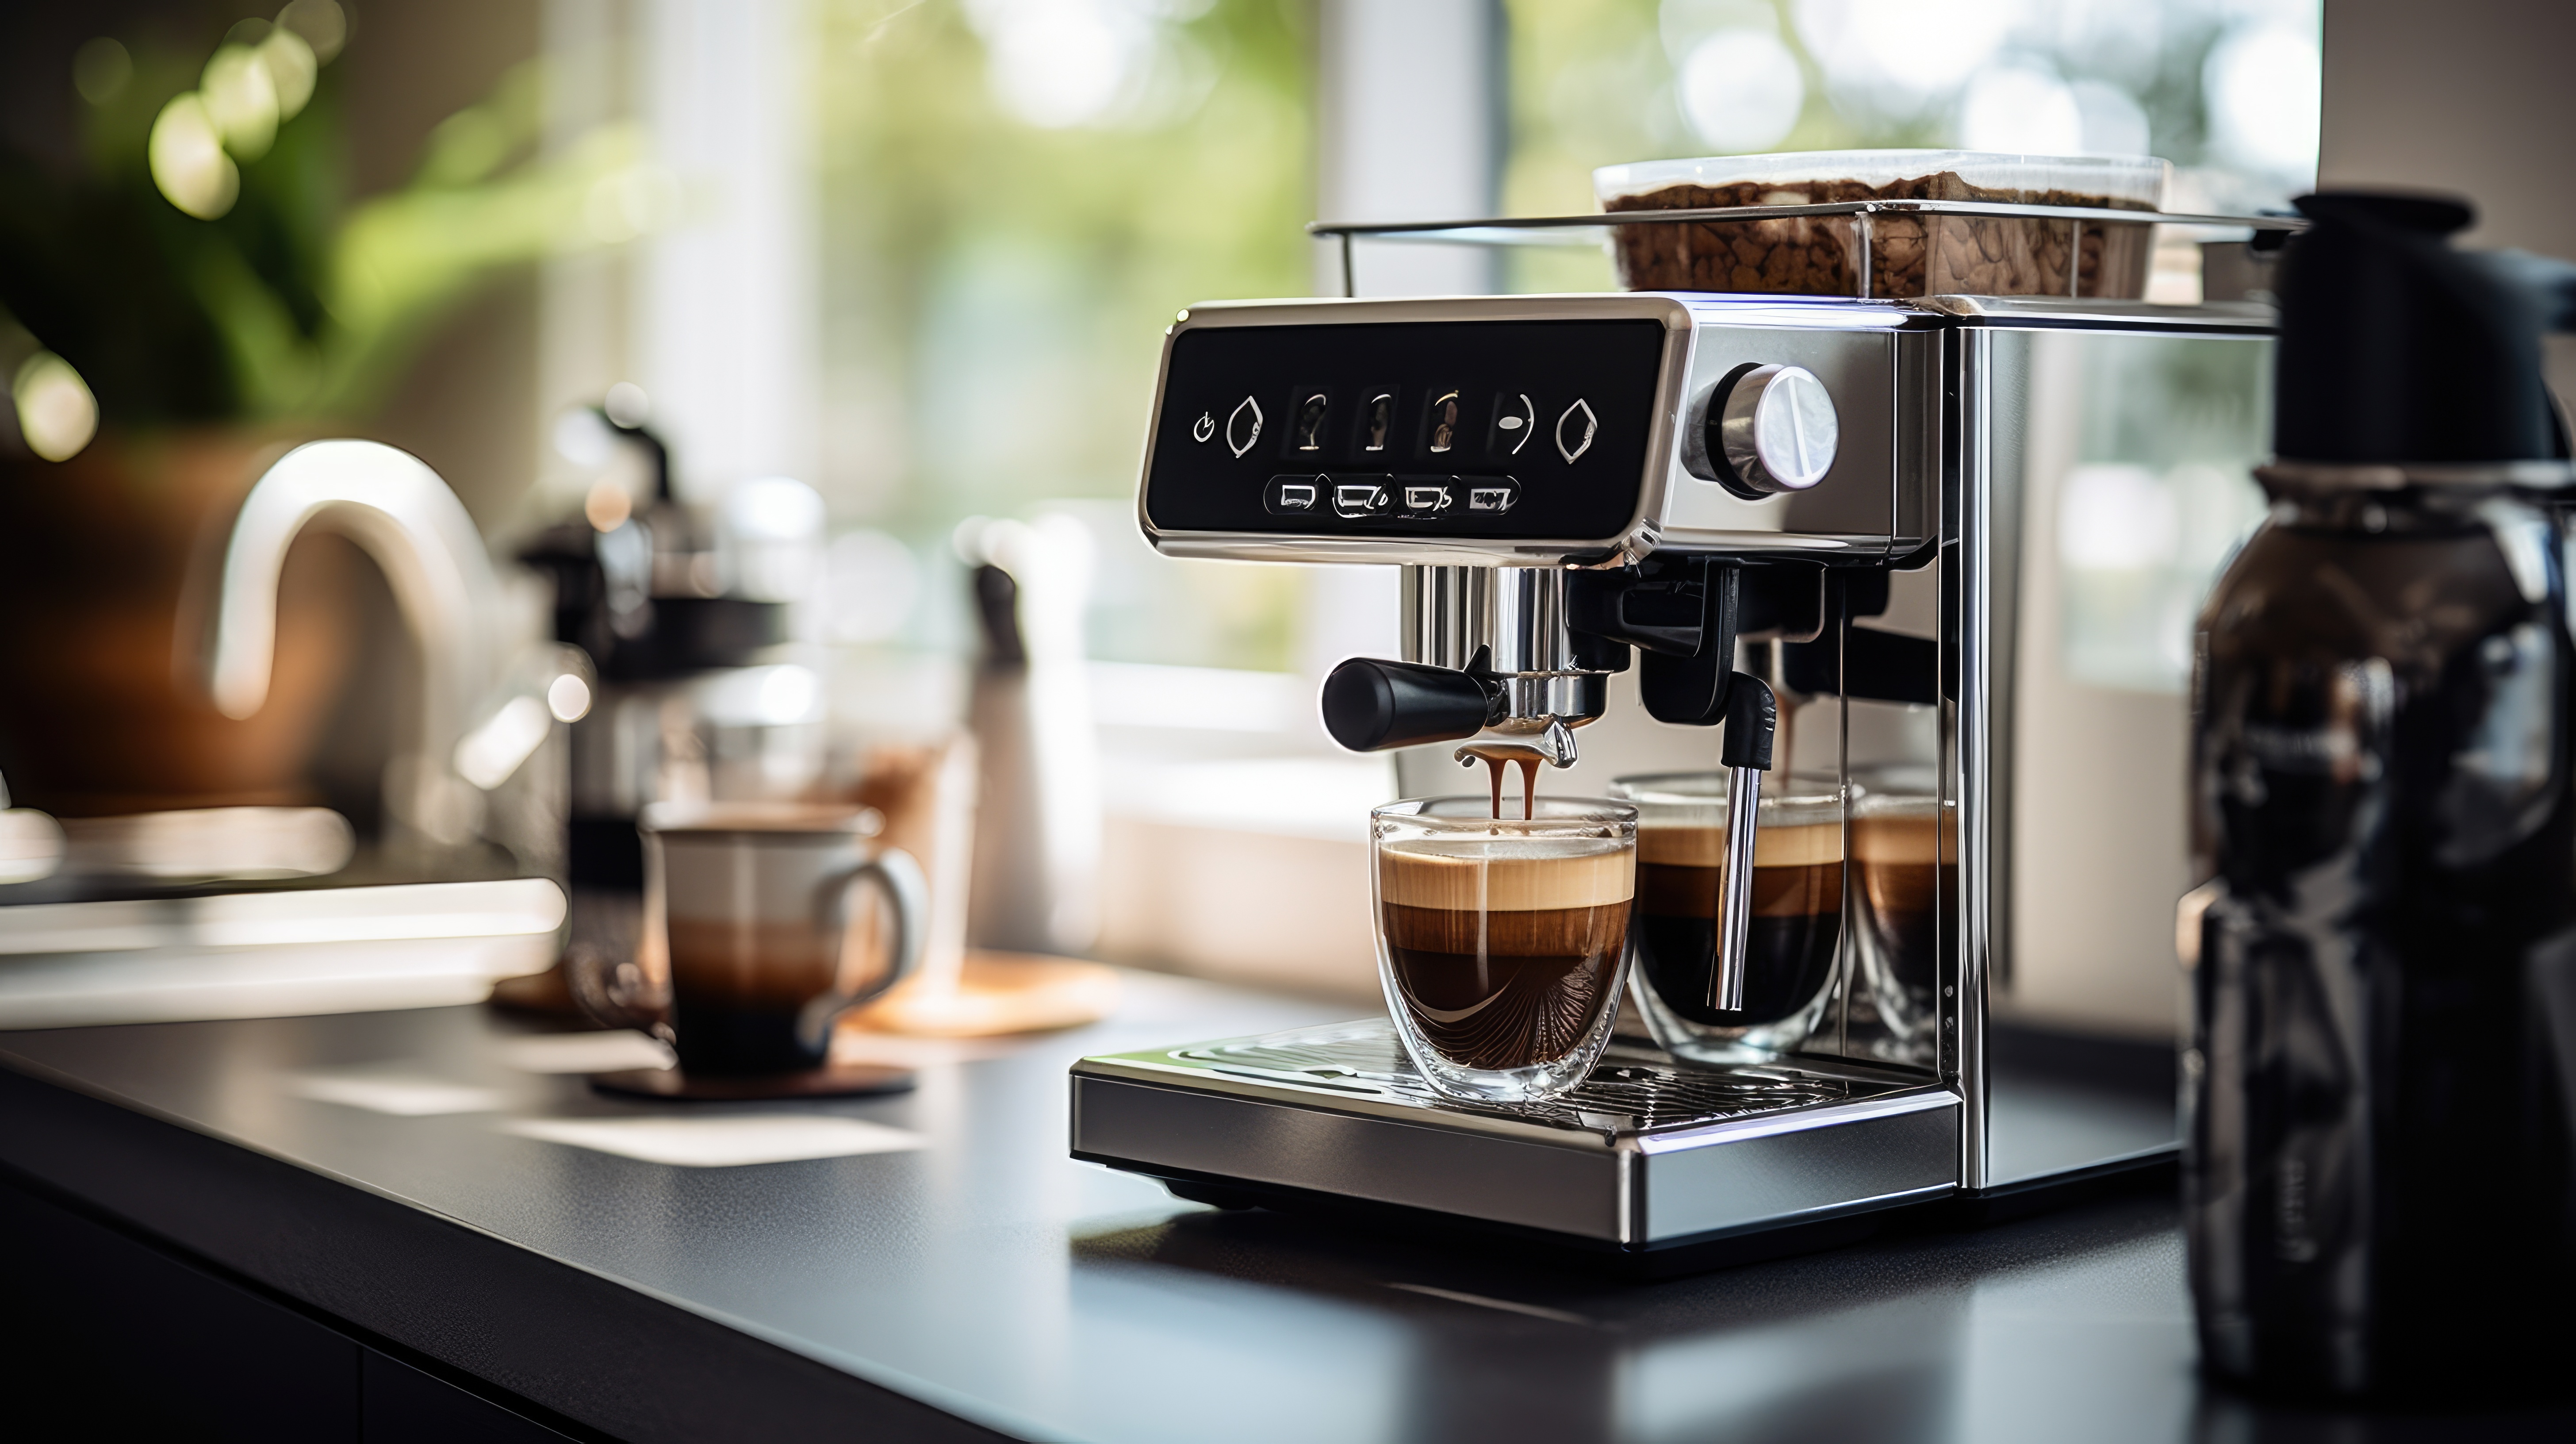 Les meilleures offres de machine à café sont à saisir lors du Prime Day Amazon © Creative Station, Adobe Stock